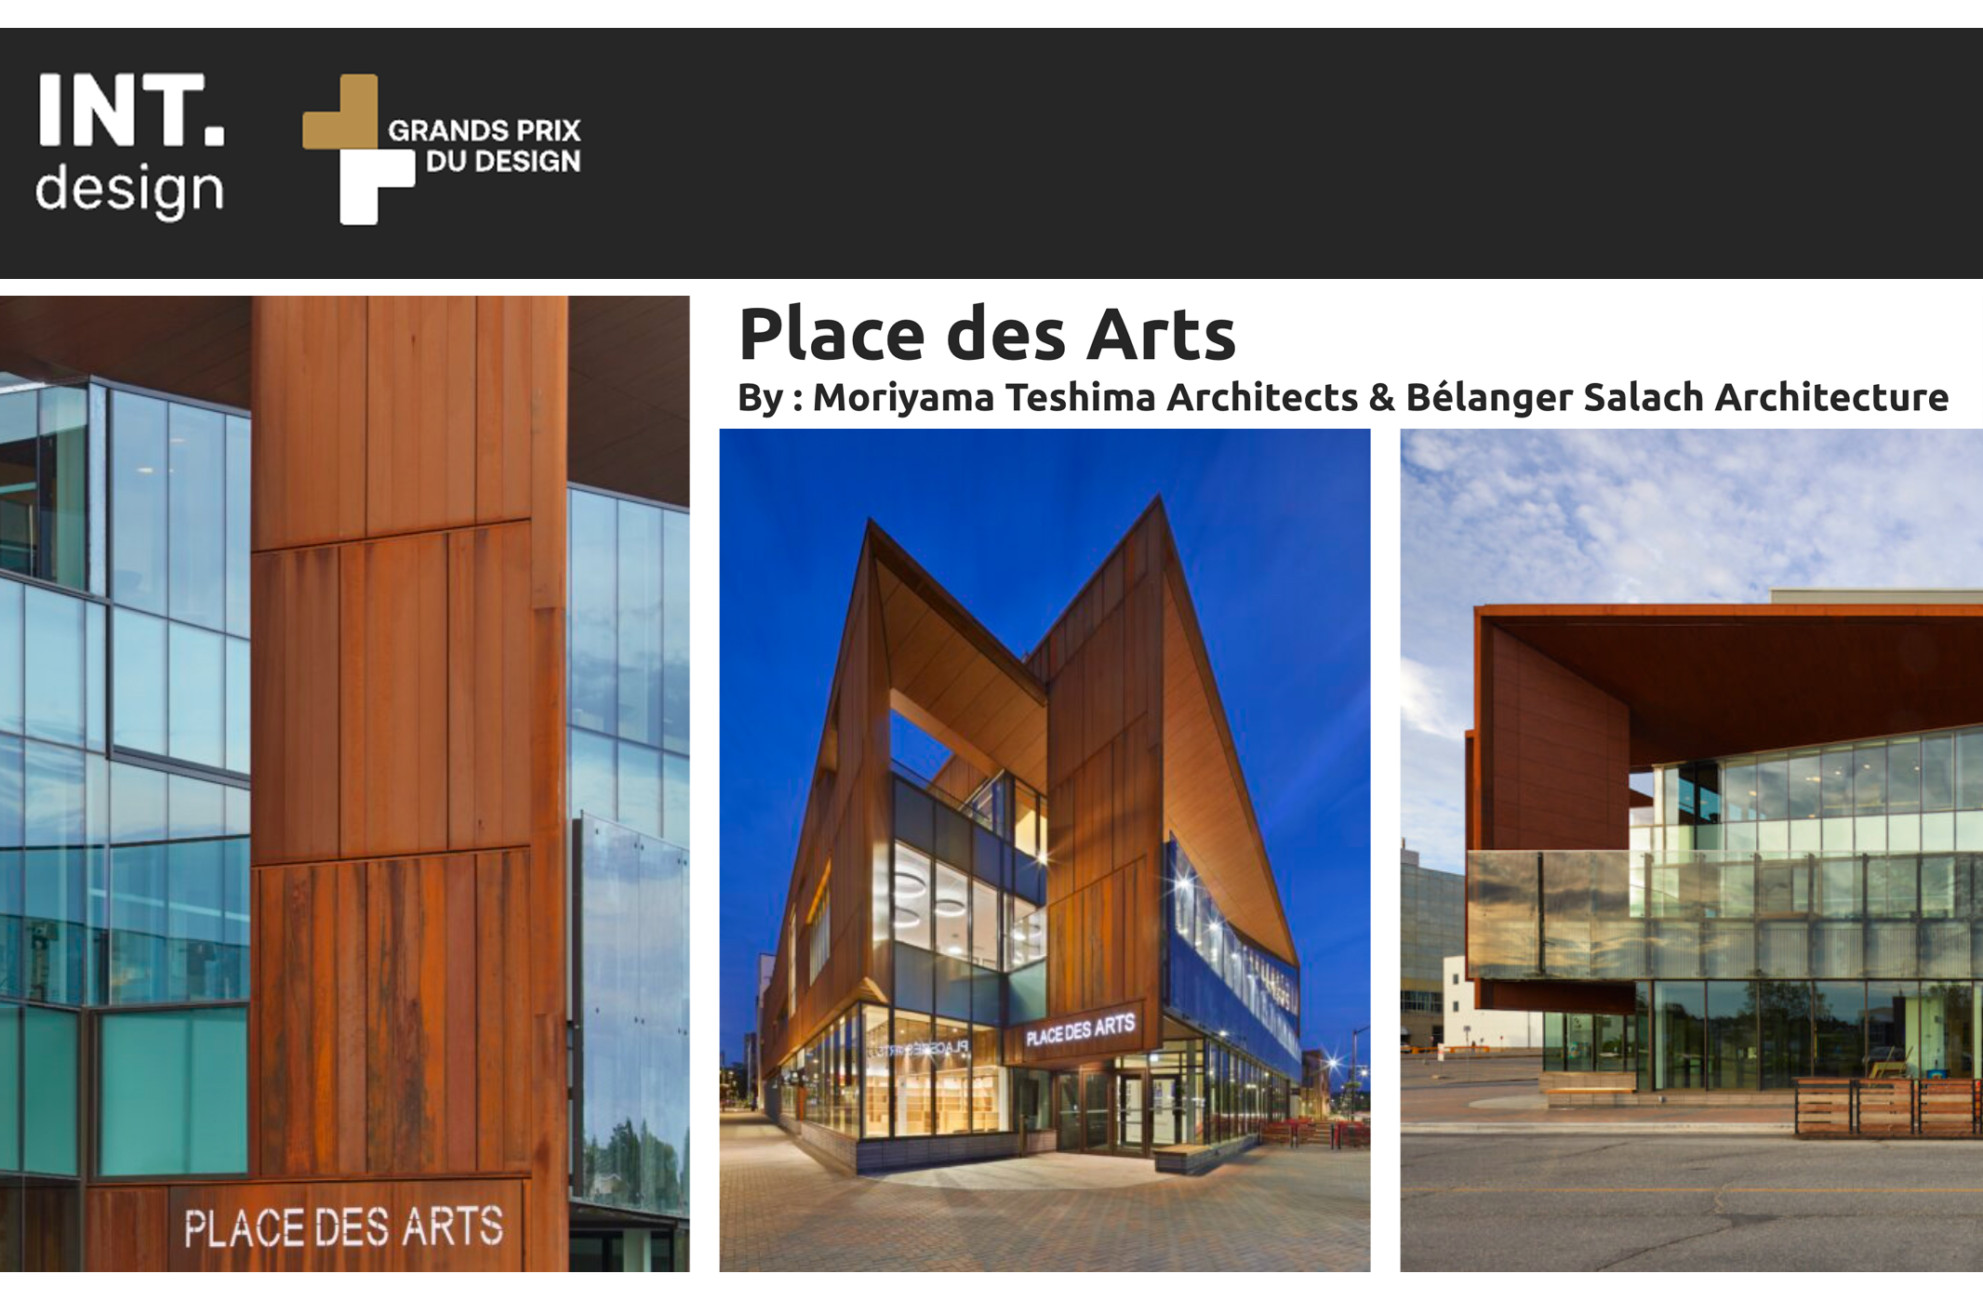 Place des Arts Earns 2 Gold Certifications in Grands Prix Du Design Awards Program